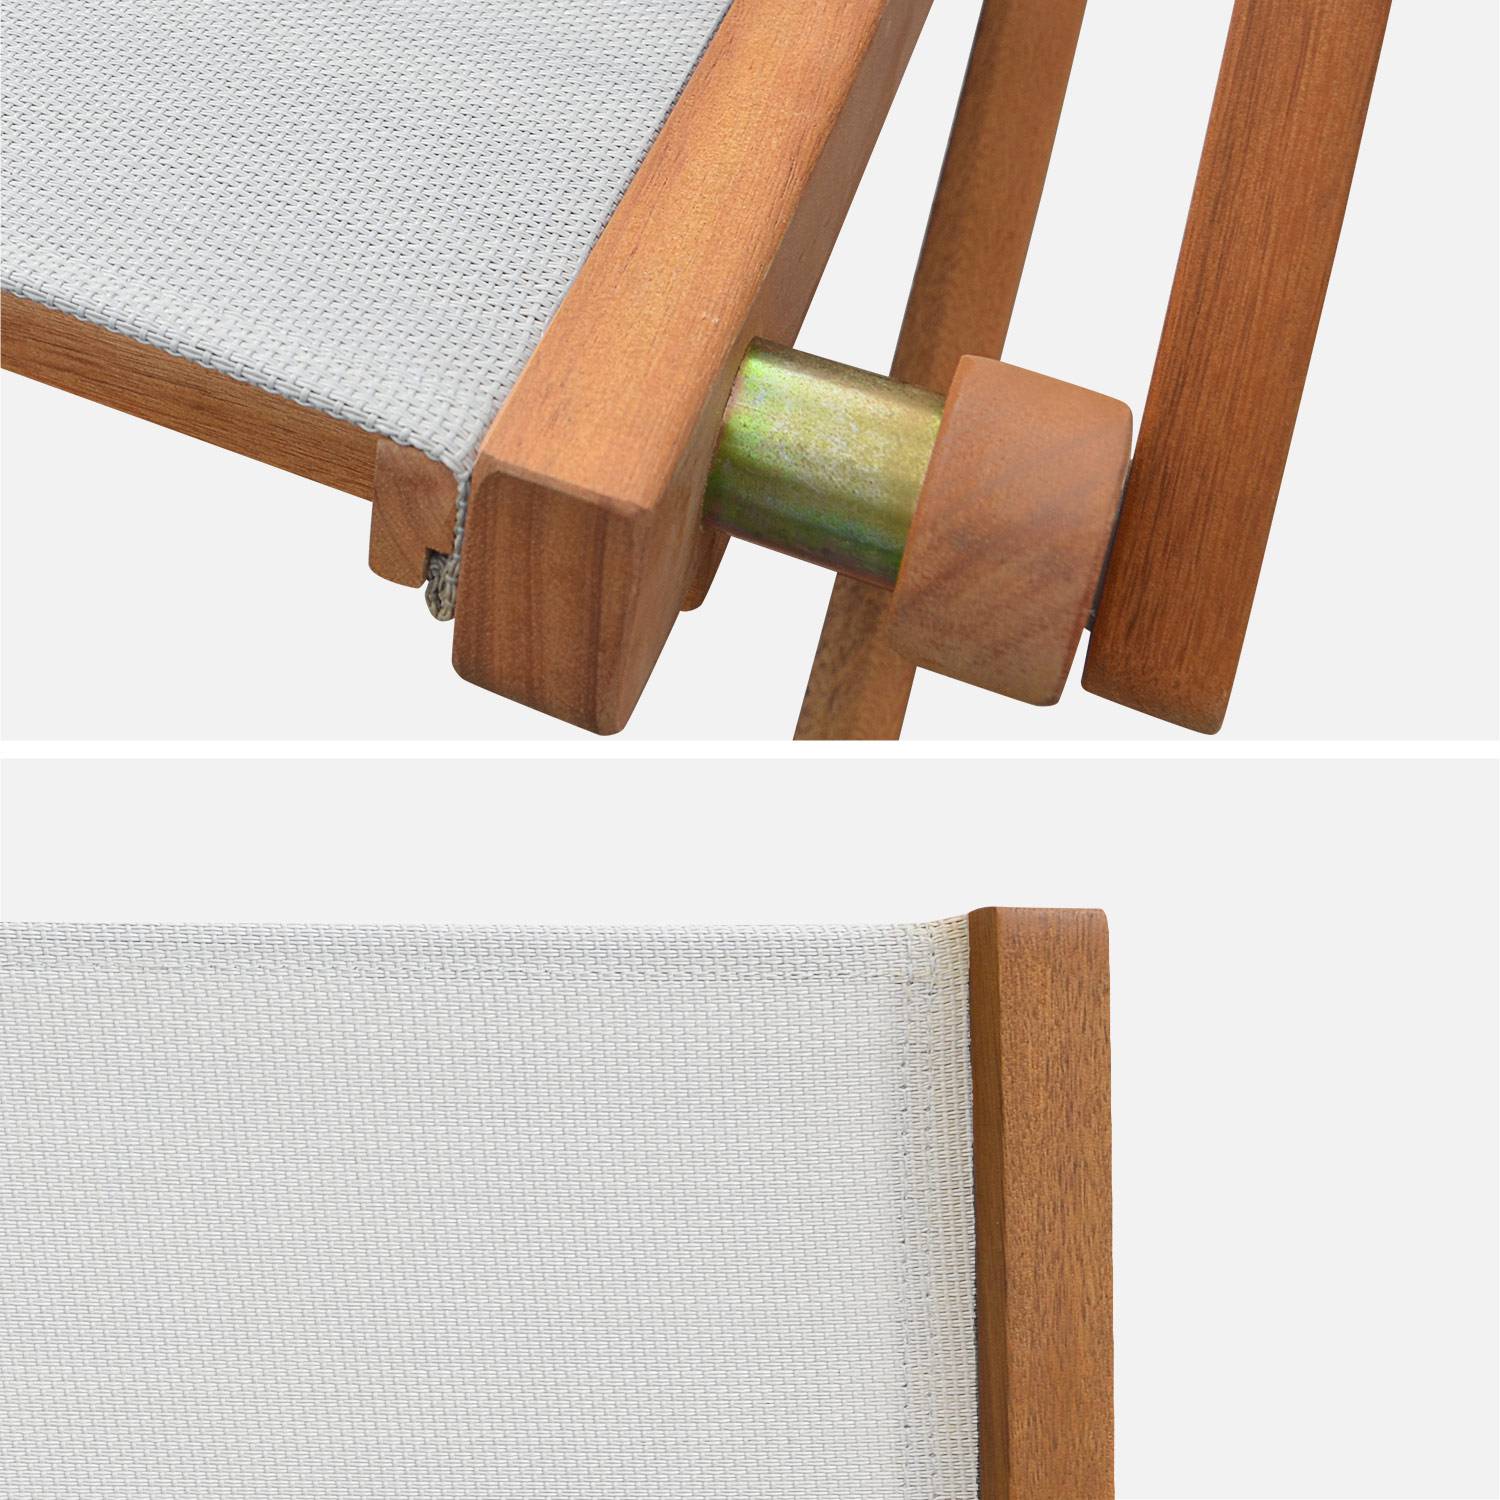 Sedie da giardino, in legno e textilene - modello: Almeria, colore: Bianco - 2 sedie pieghevoli in legno di eucalipto FSC oliato e textilene,sweeek,Photo5